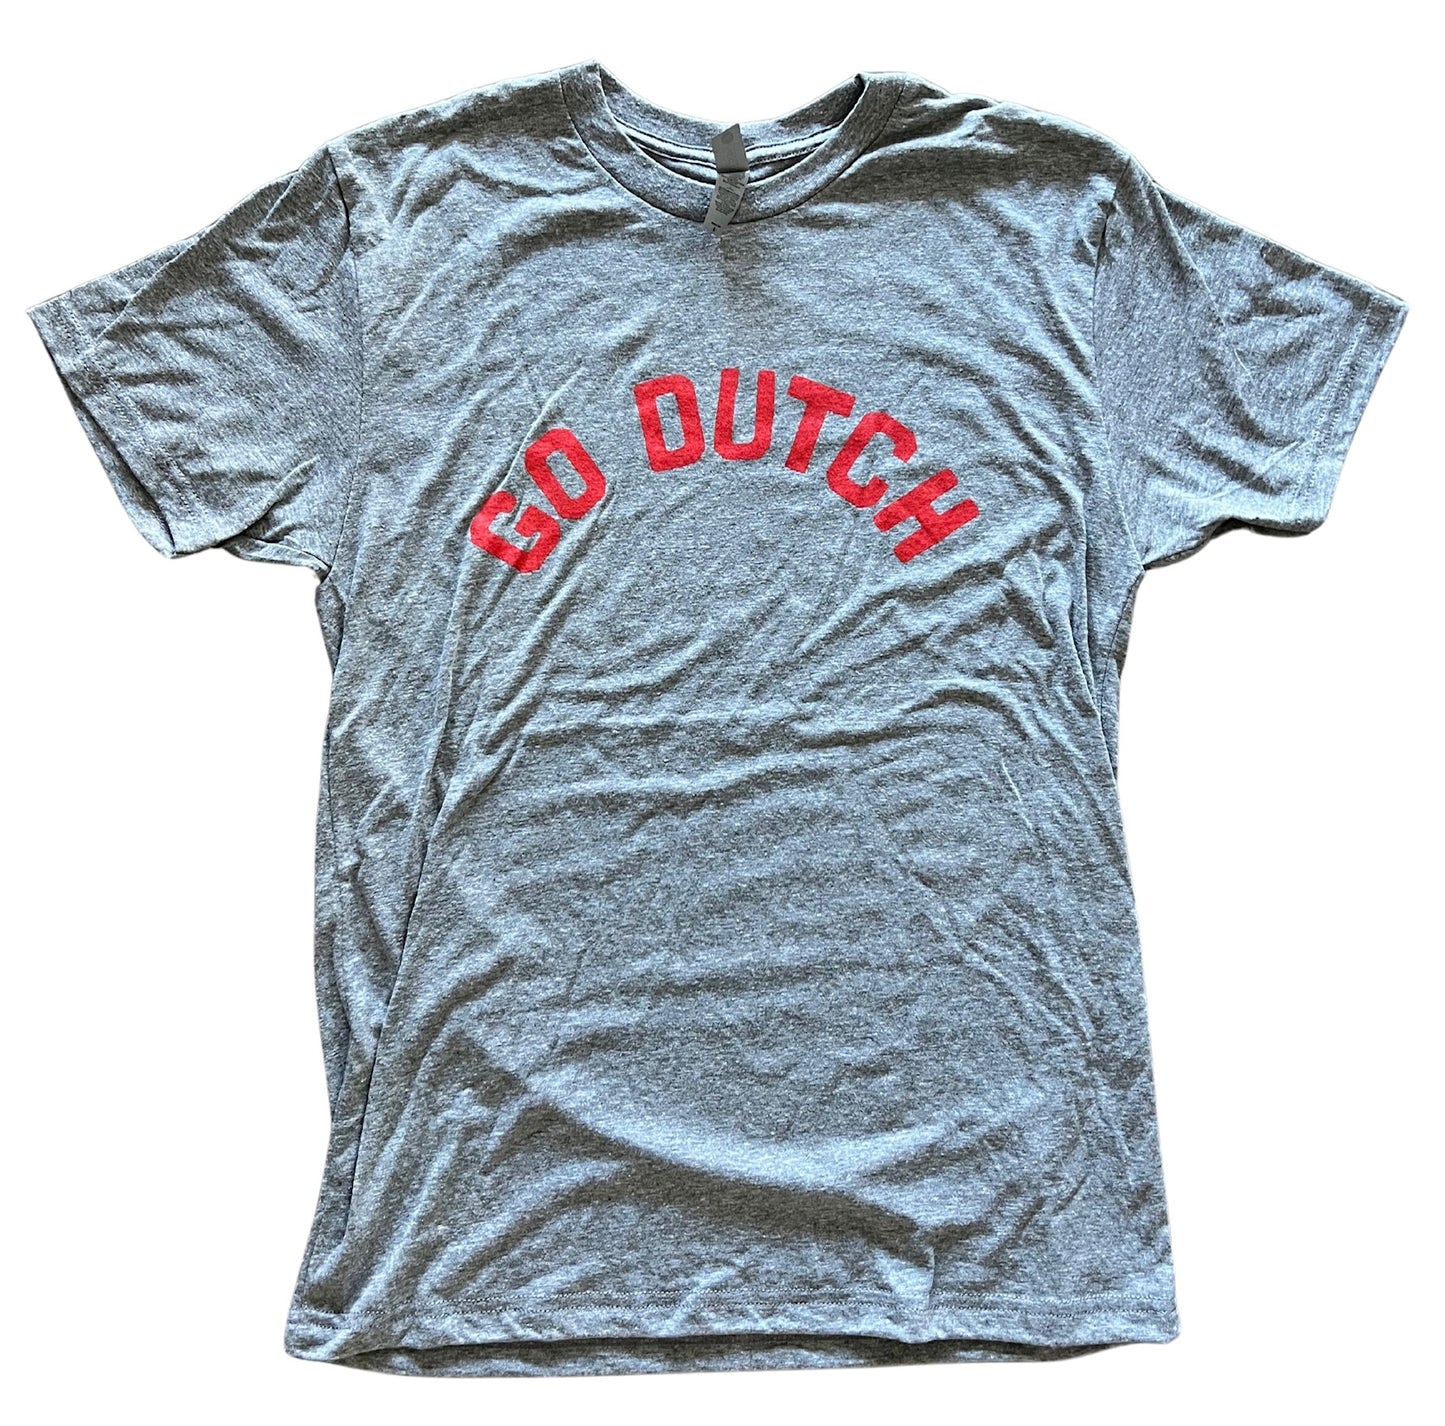 Vintage Central GO DUTCH T Shirt - Unisex